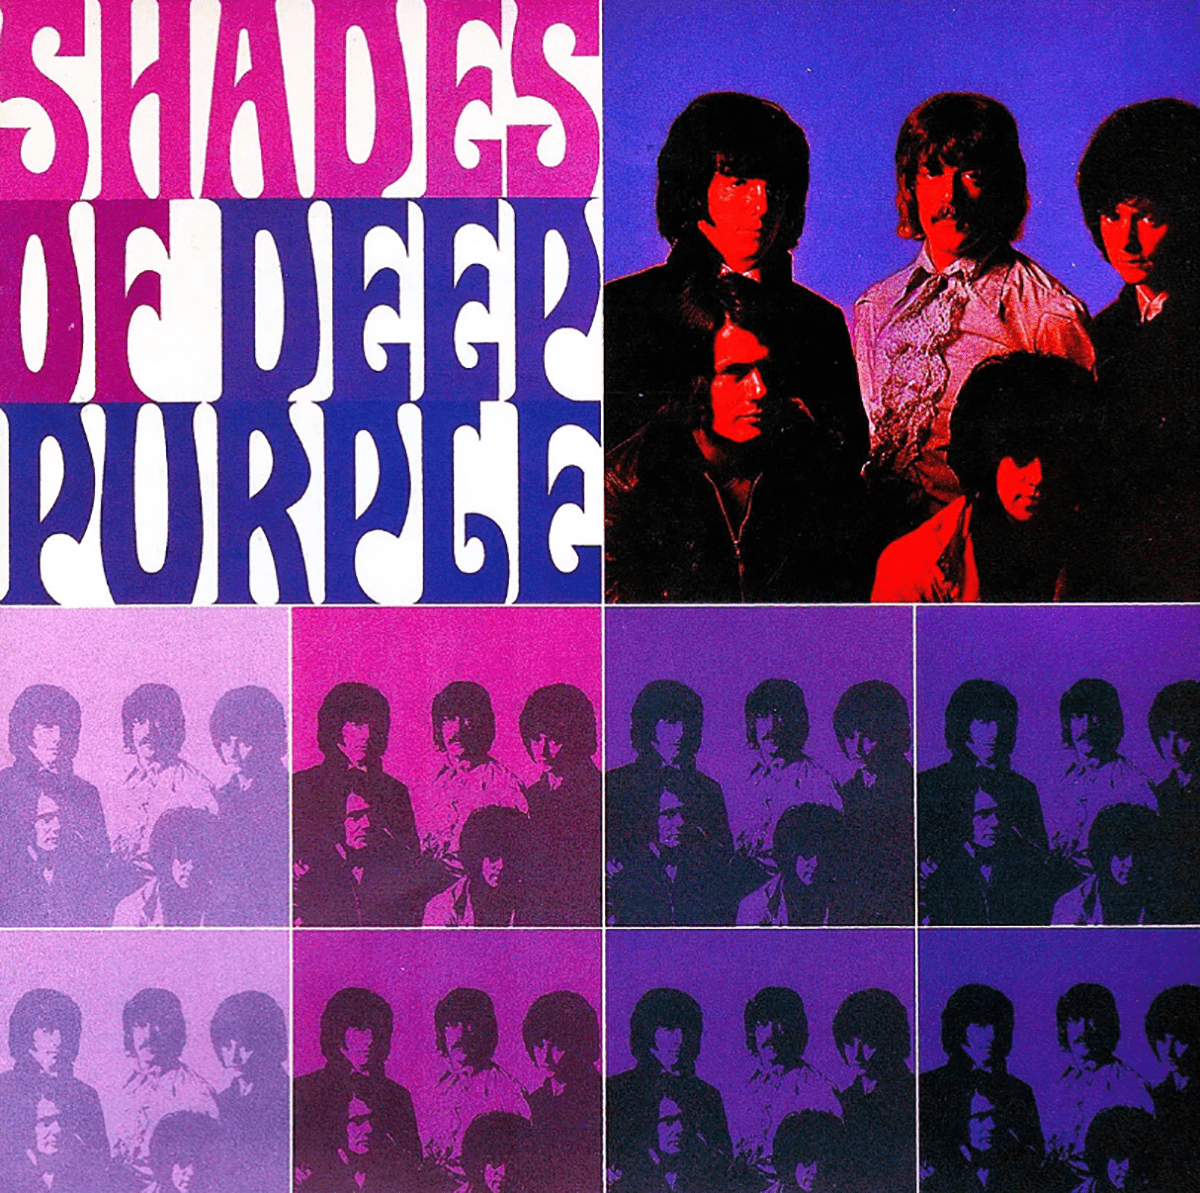 Capa do álbum de estúdio "Shades of Deep Purple", 1968